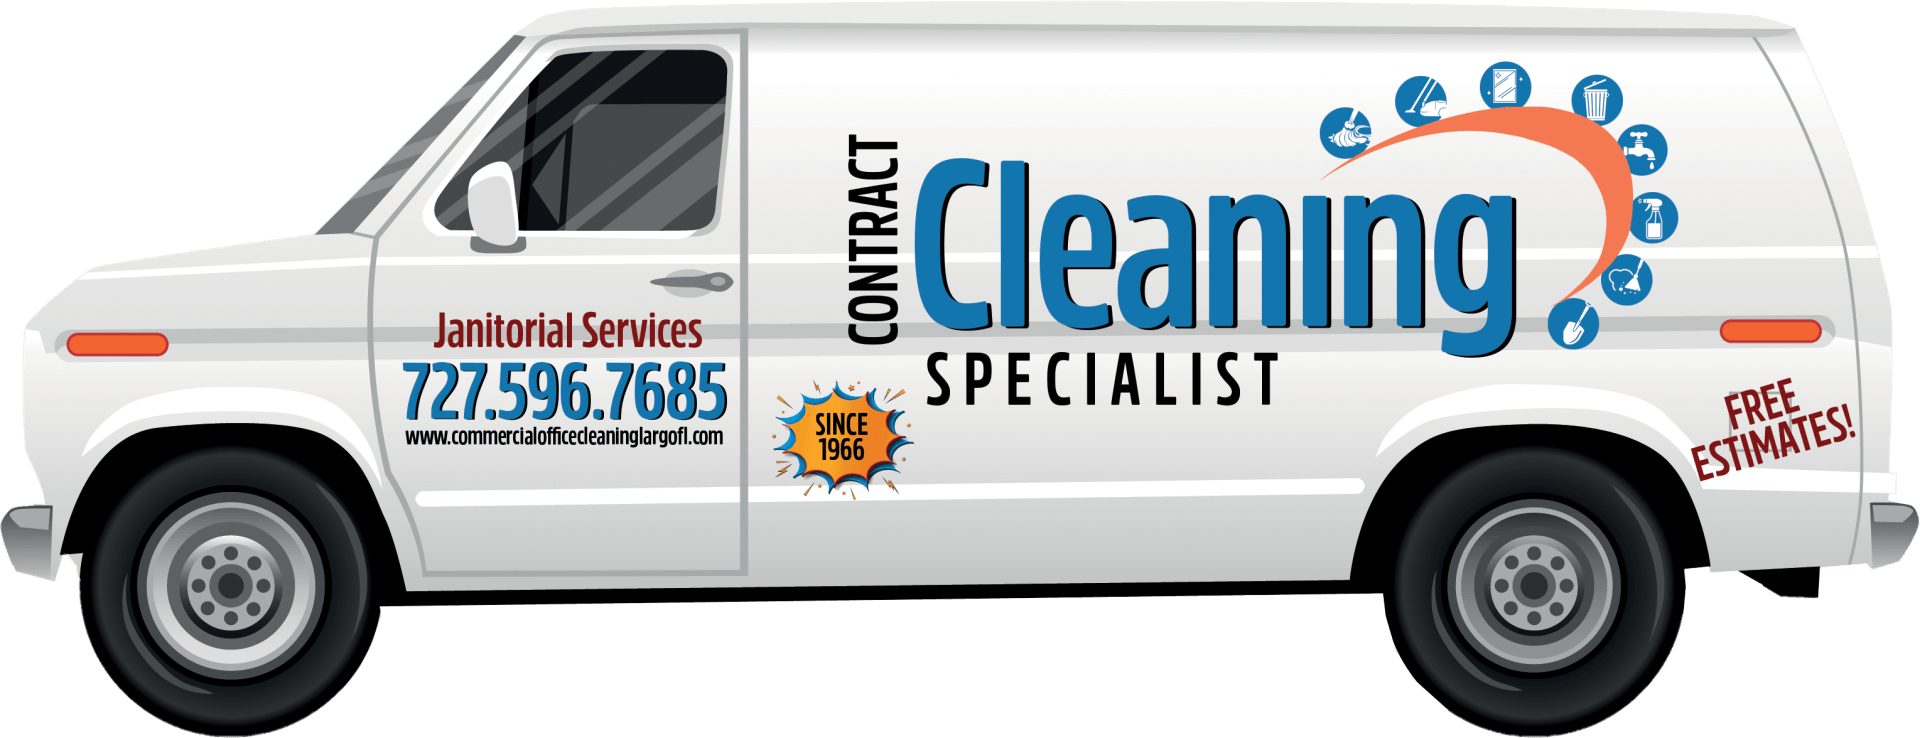 Contract Cleaning Specialist Van